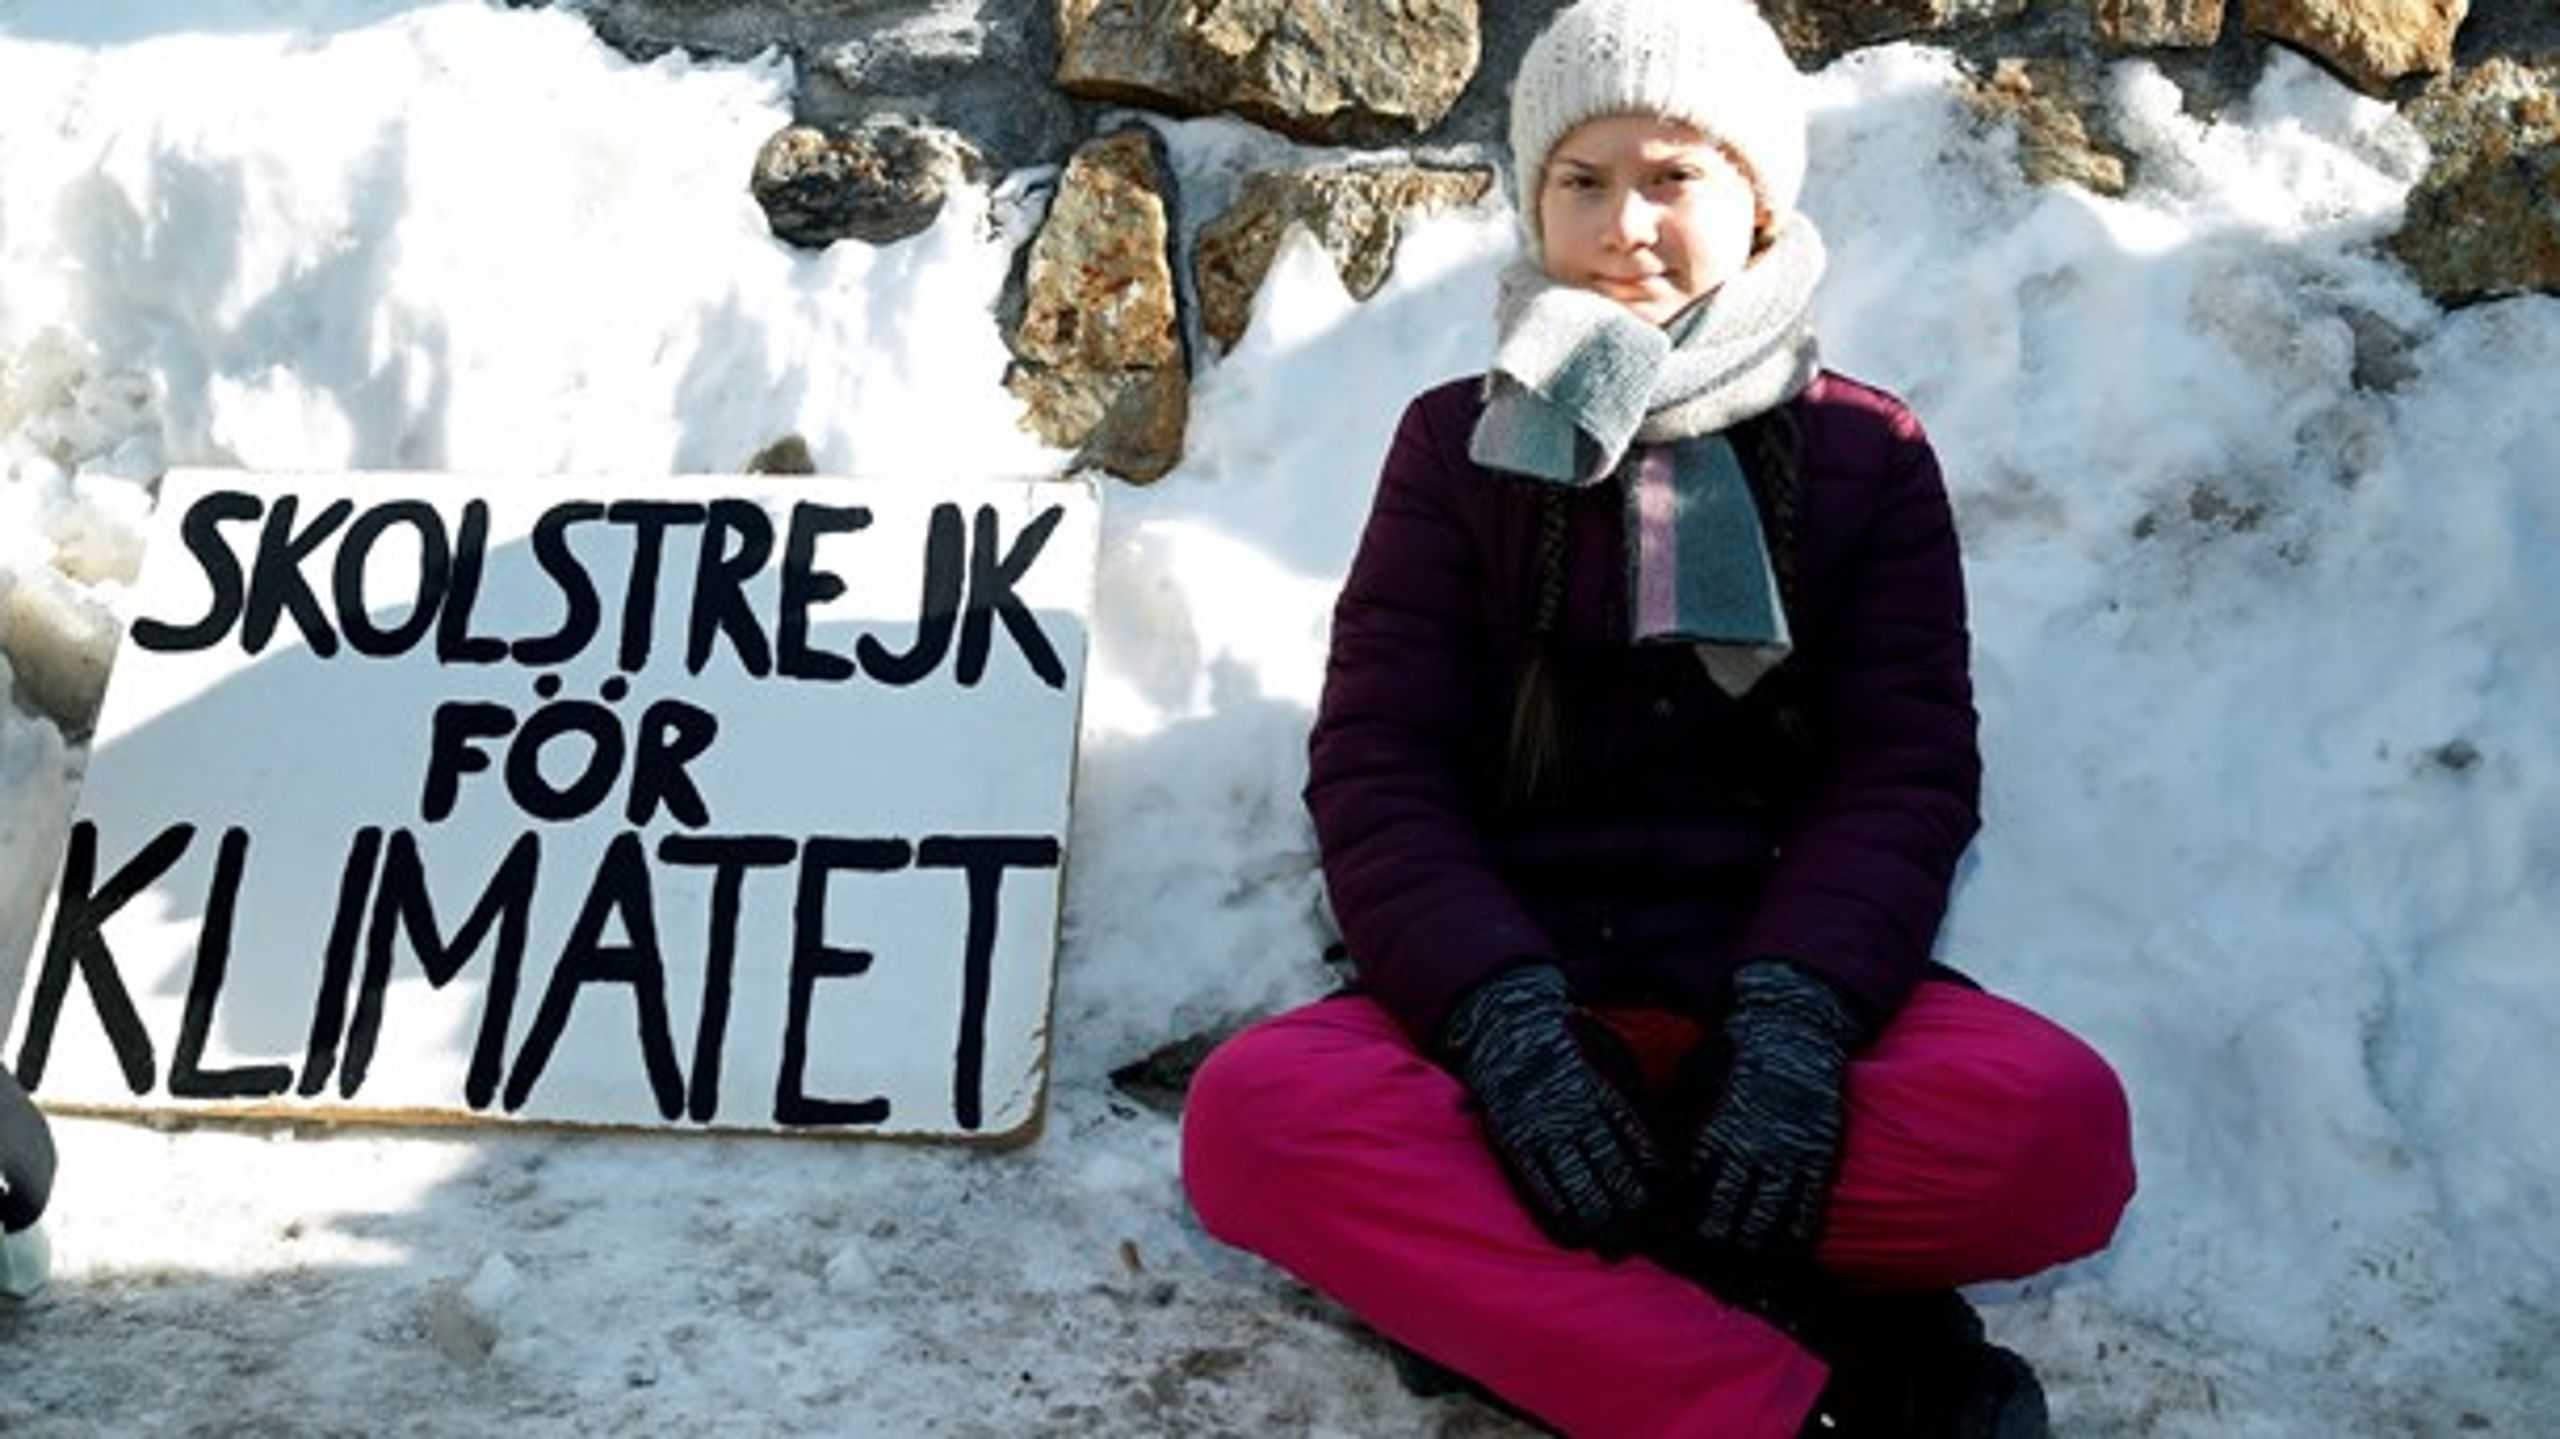 16-årige Greta Thunberg fra Sverige&nbsp;strejkede fra skole for at protestere mod klimaforandringerne.